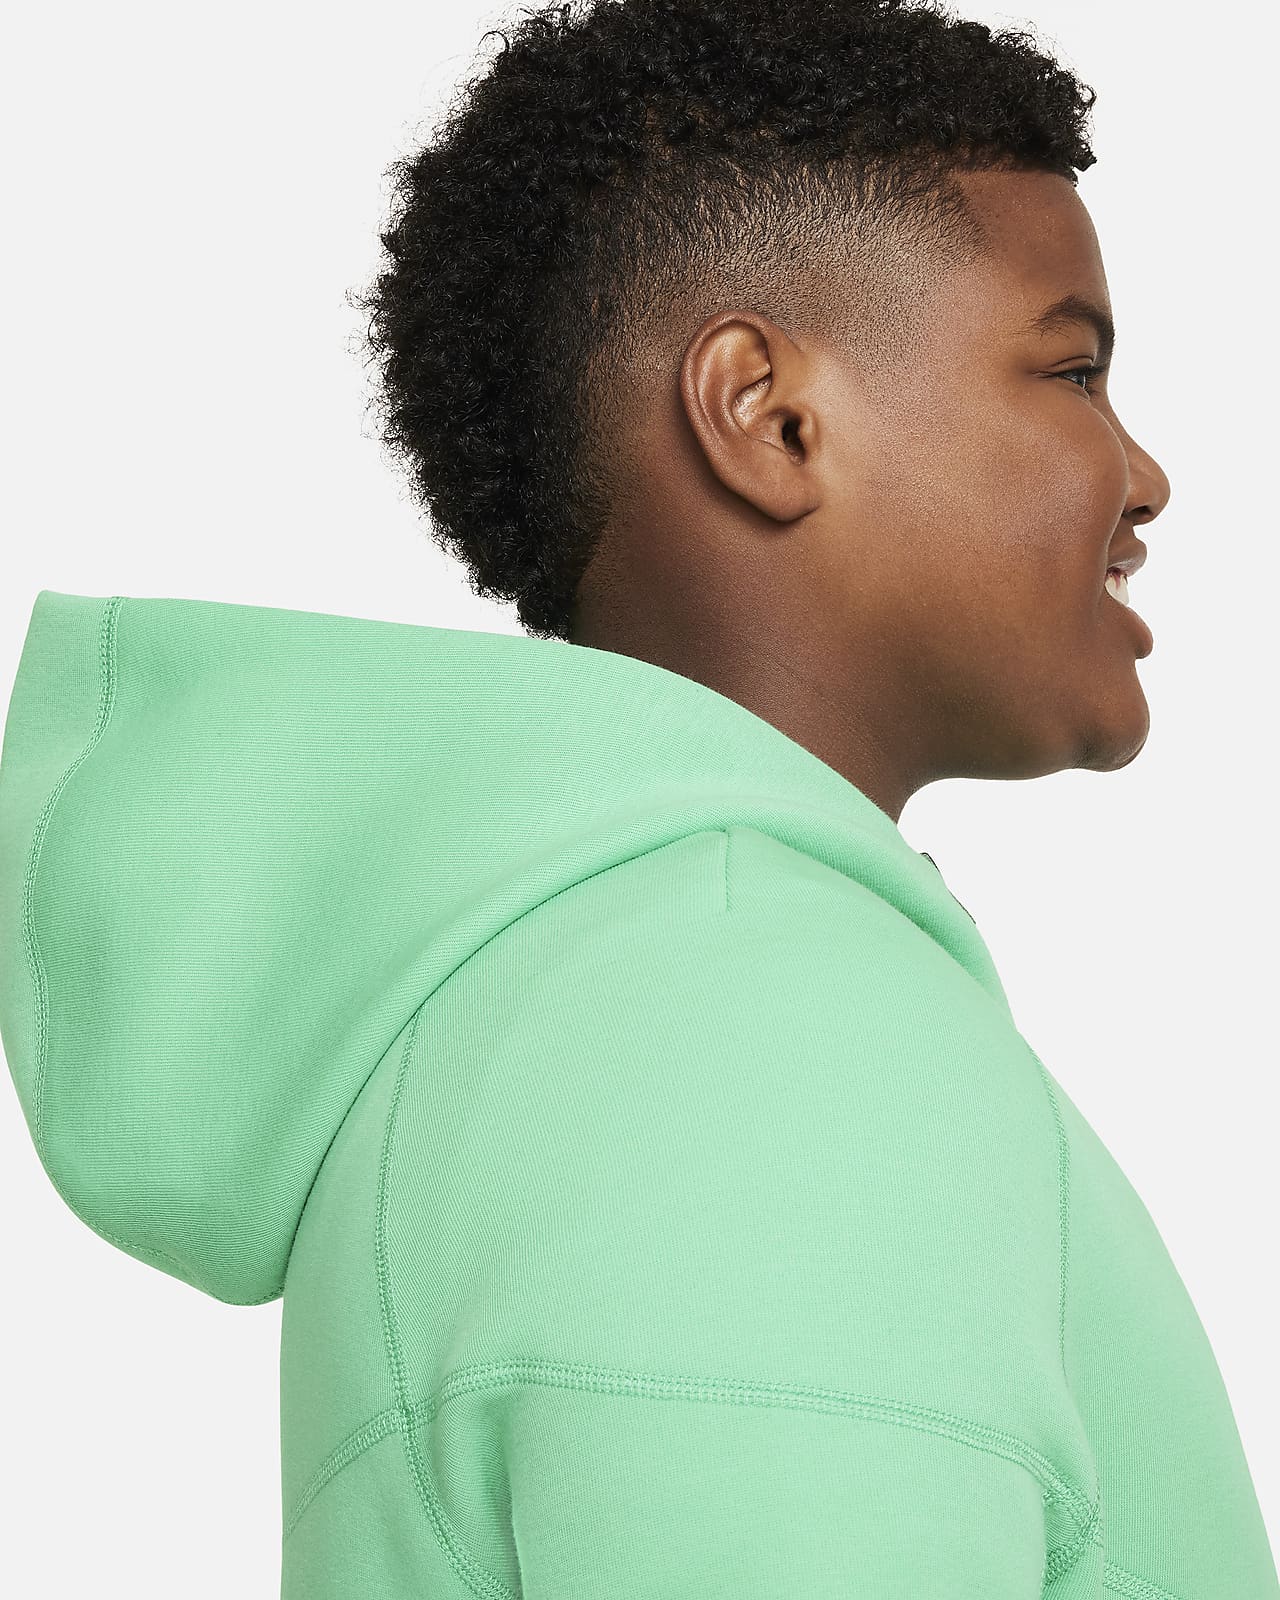 Nike Sportswear Tech Fleece Older Kids' (Boys') Full-Zip Hoodie (Extended  Size). Nike LU